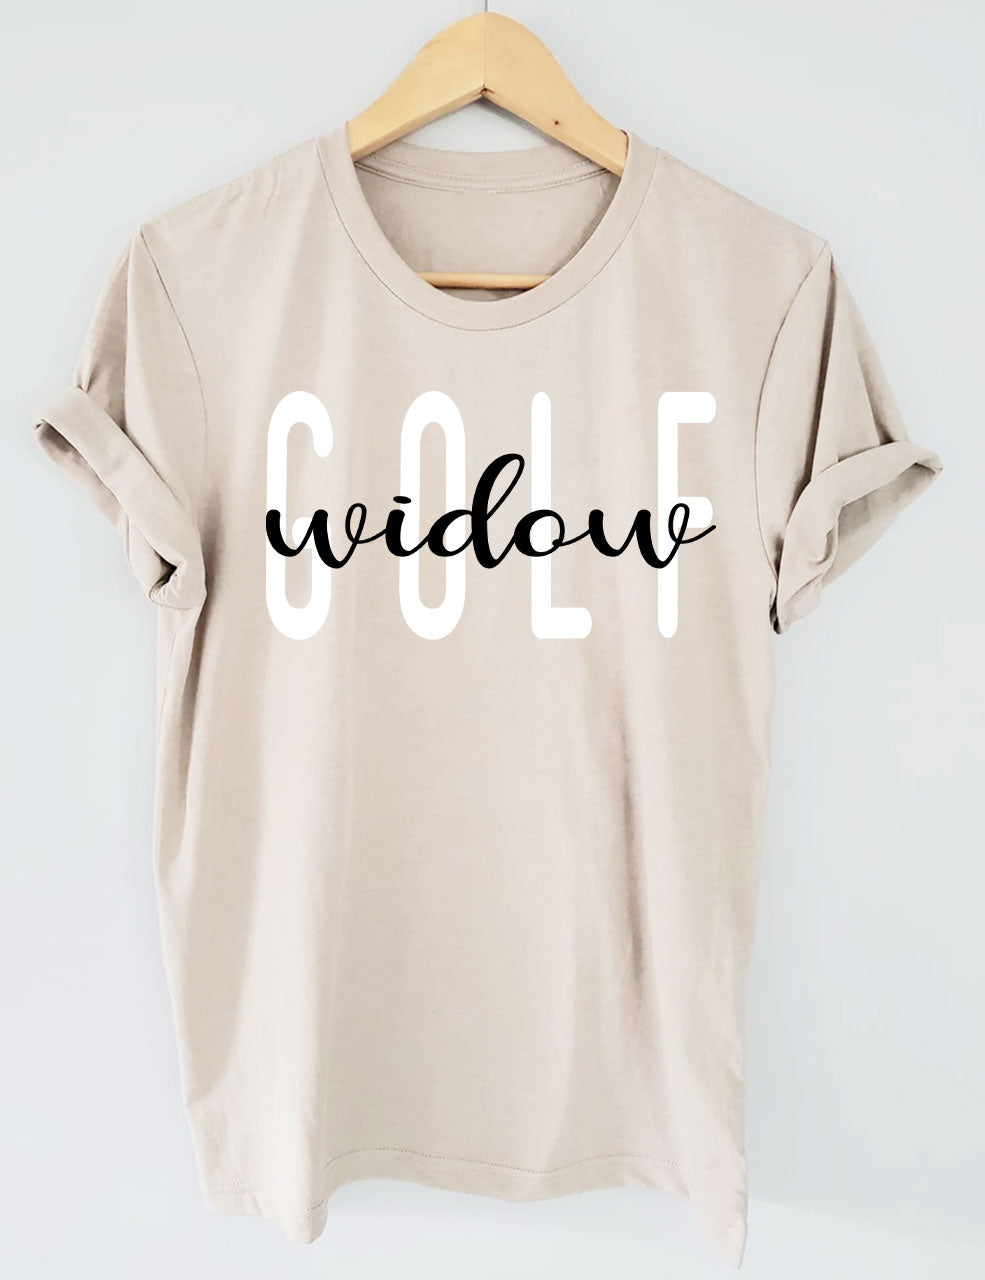 Golf Widow T-Shirt